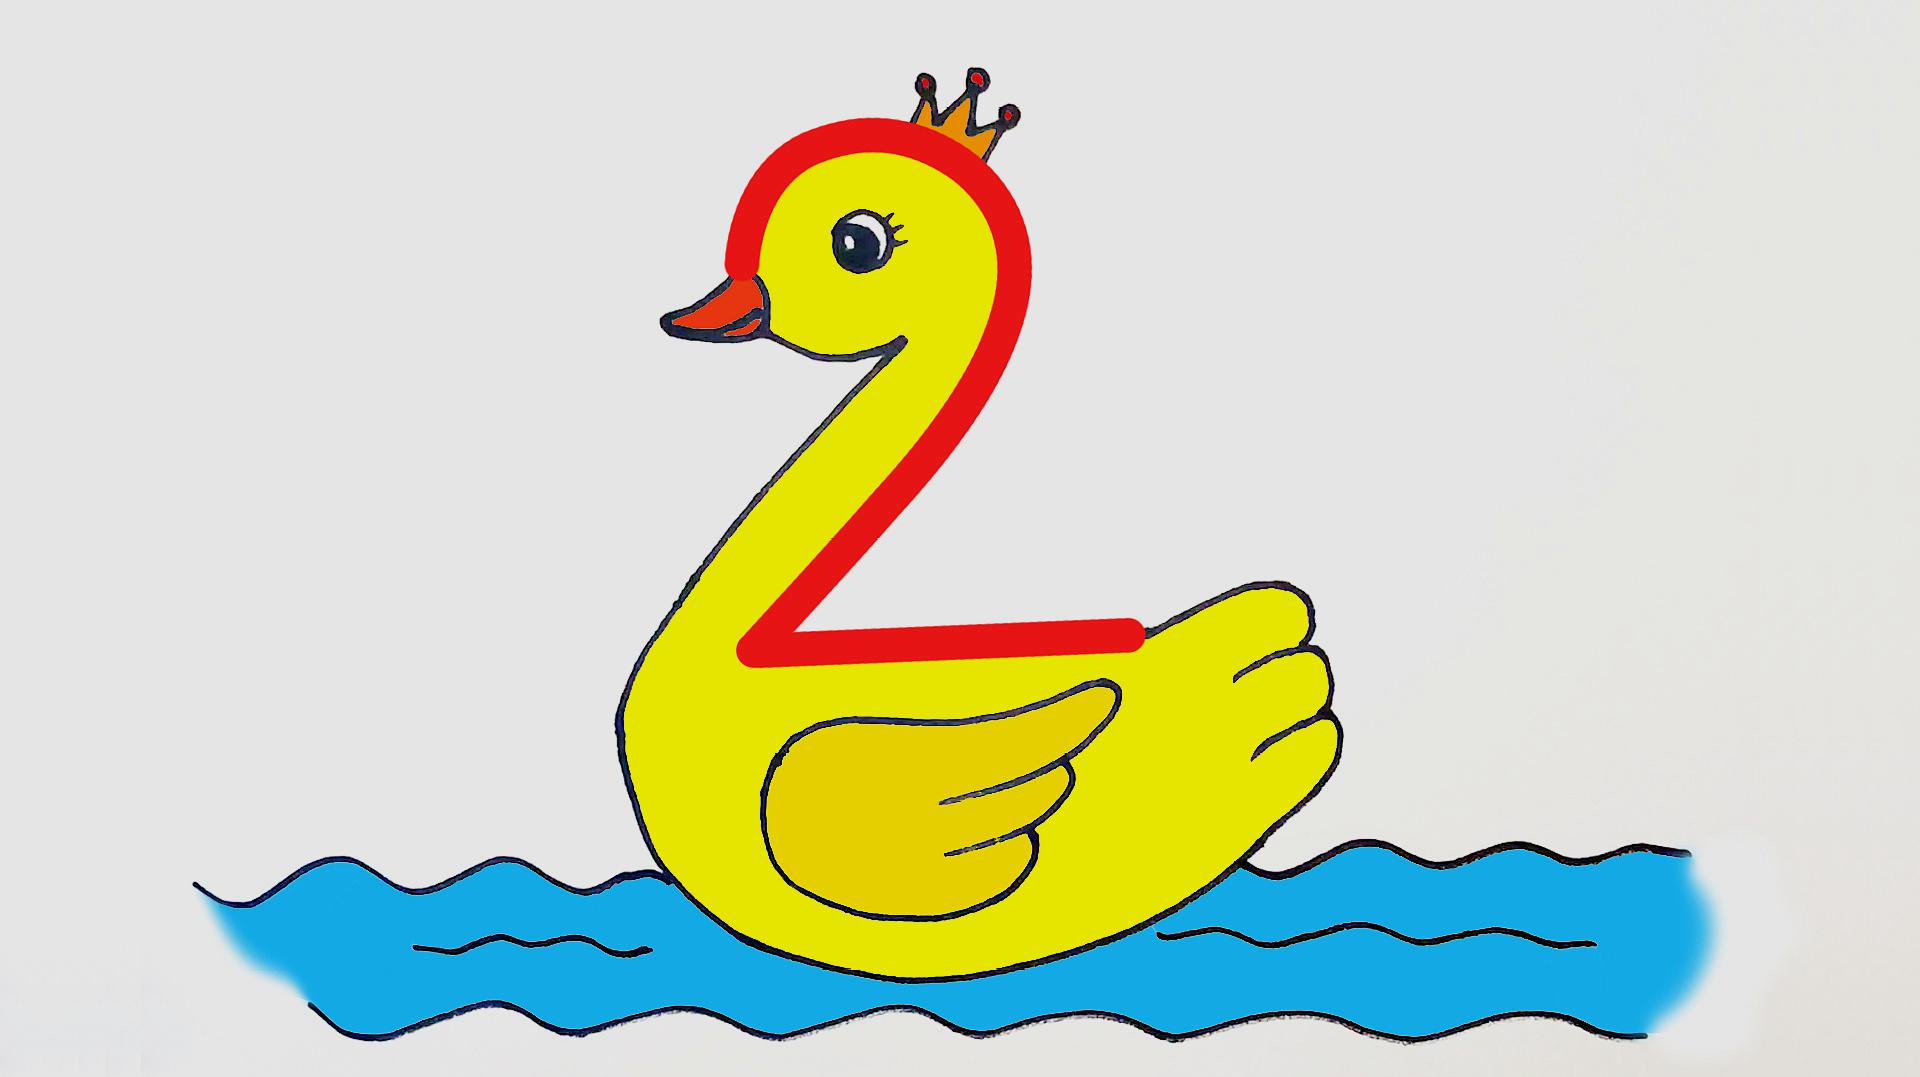 数字2画鸭子画法图片